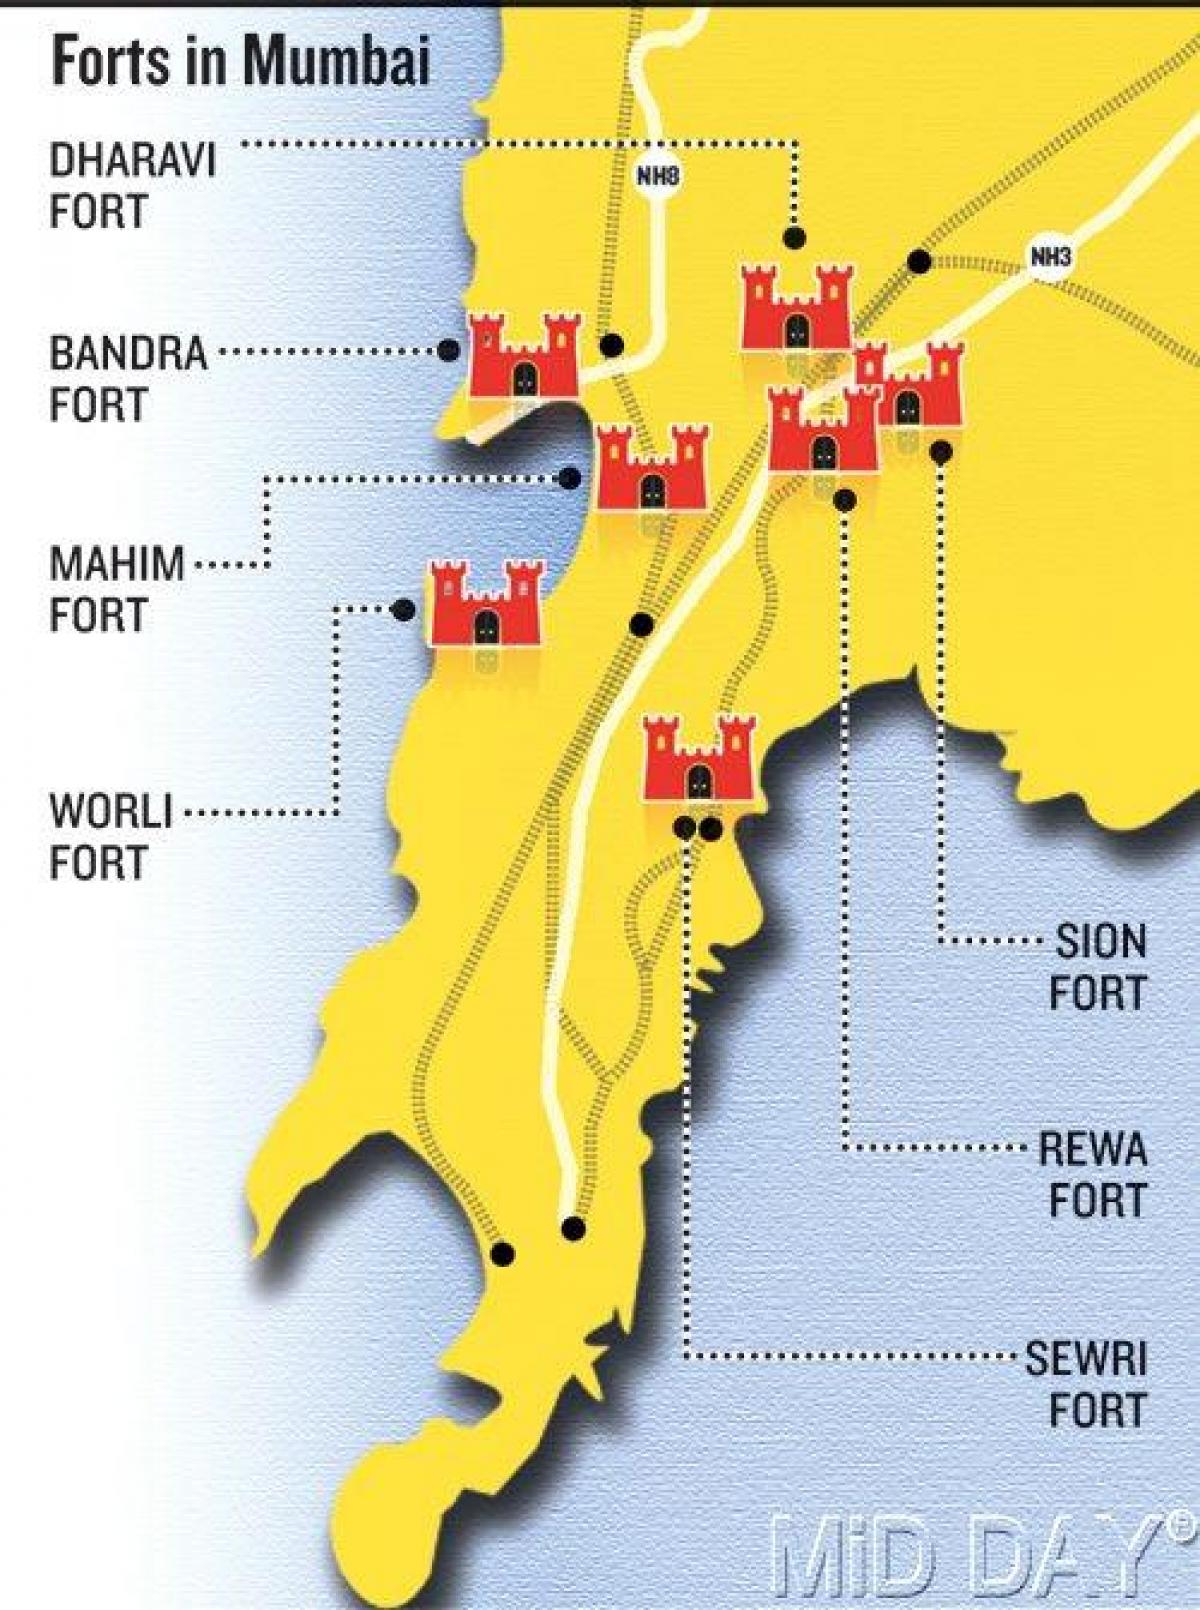 Mumbai fort mapa de la zona